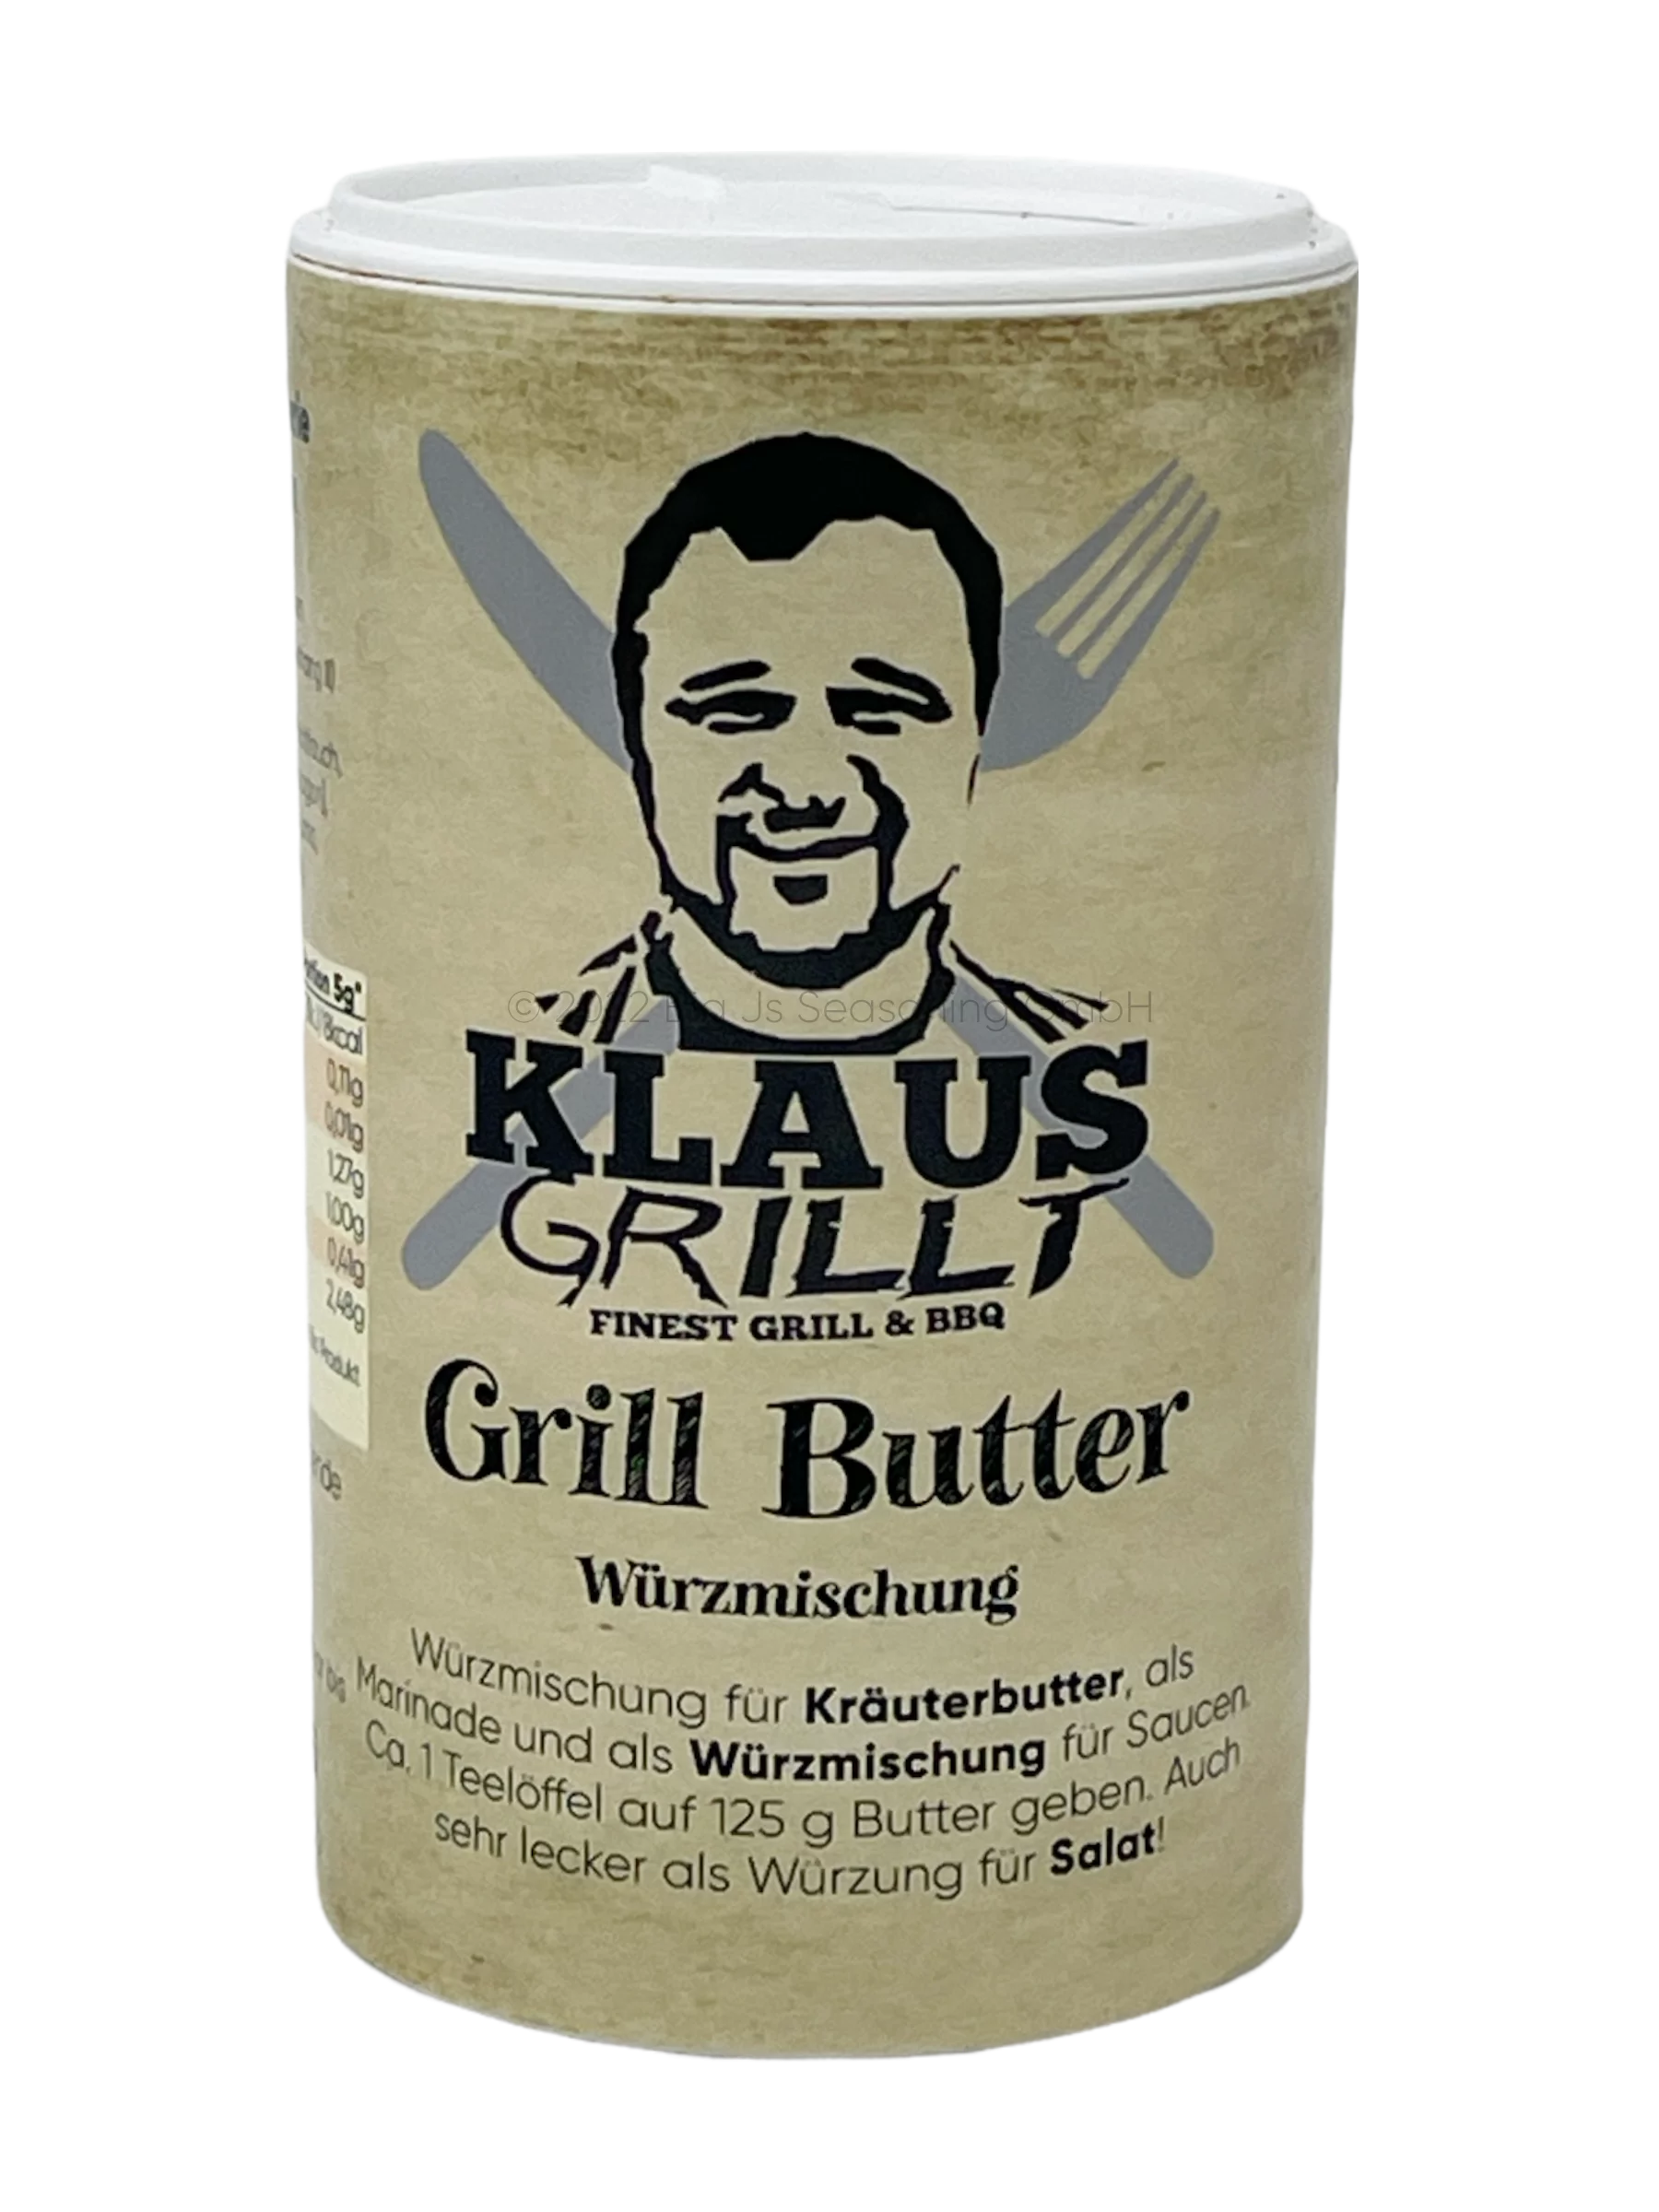 Klaus grillt, Grillbutter, 80g Streuer